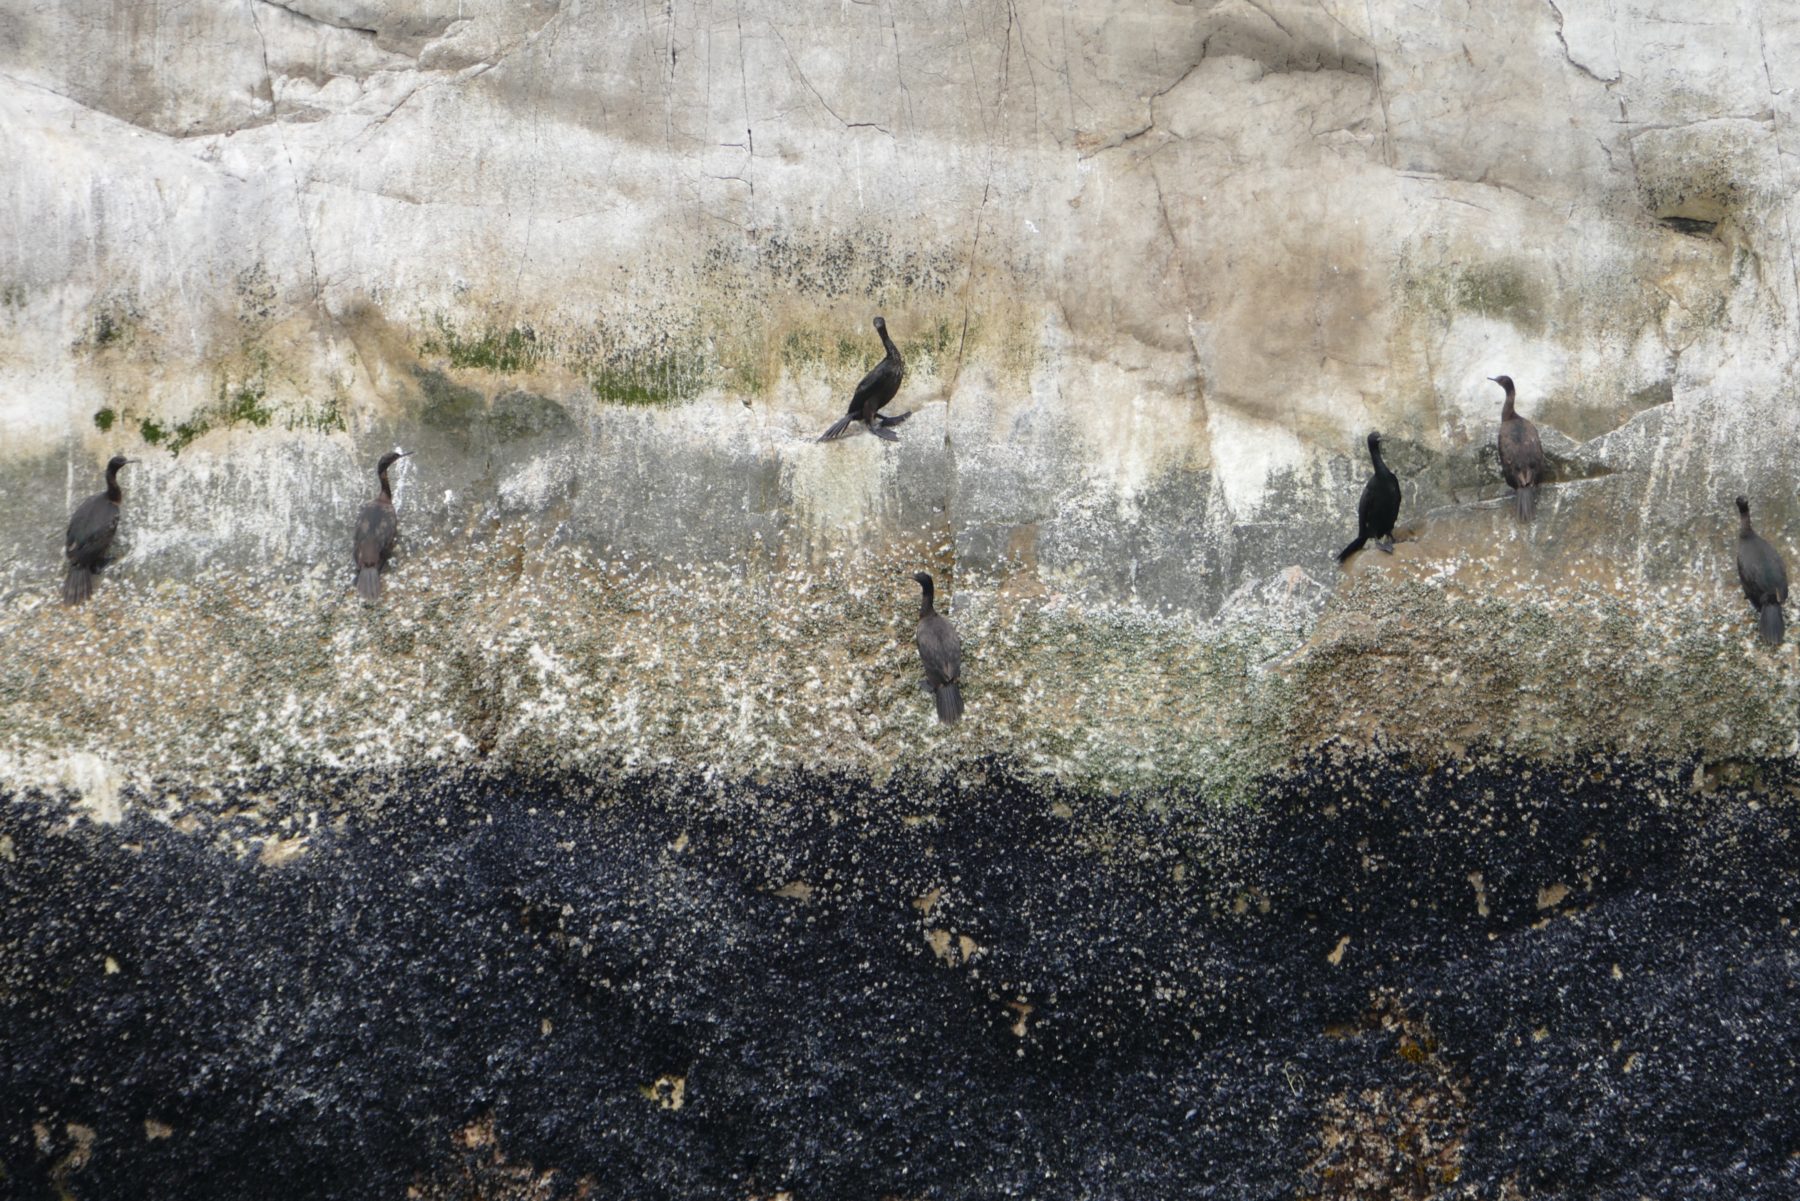 Pelagic (I think) cormorants, Glacier Bay. All photos copyright Doug Spencer 